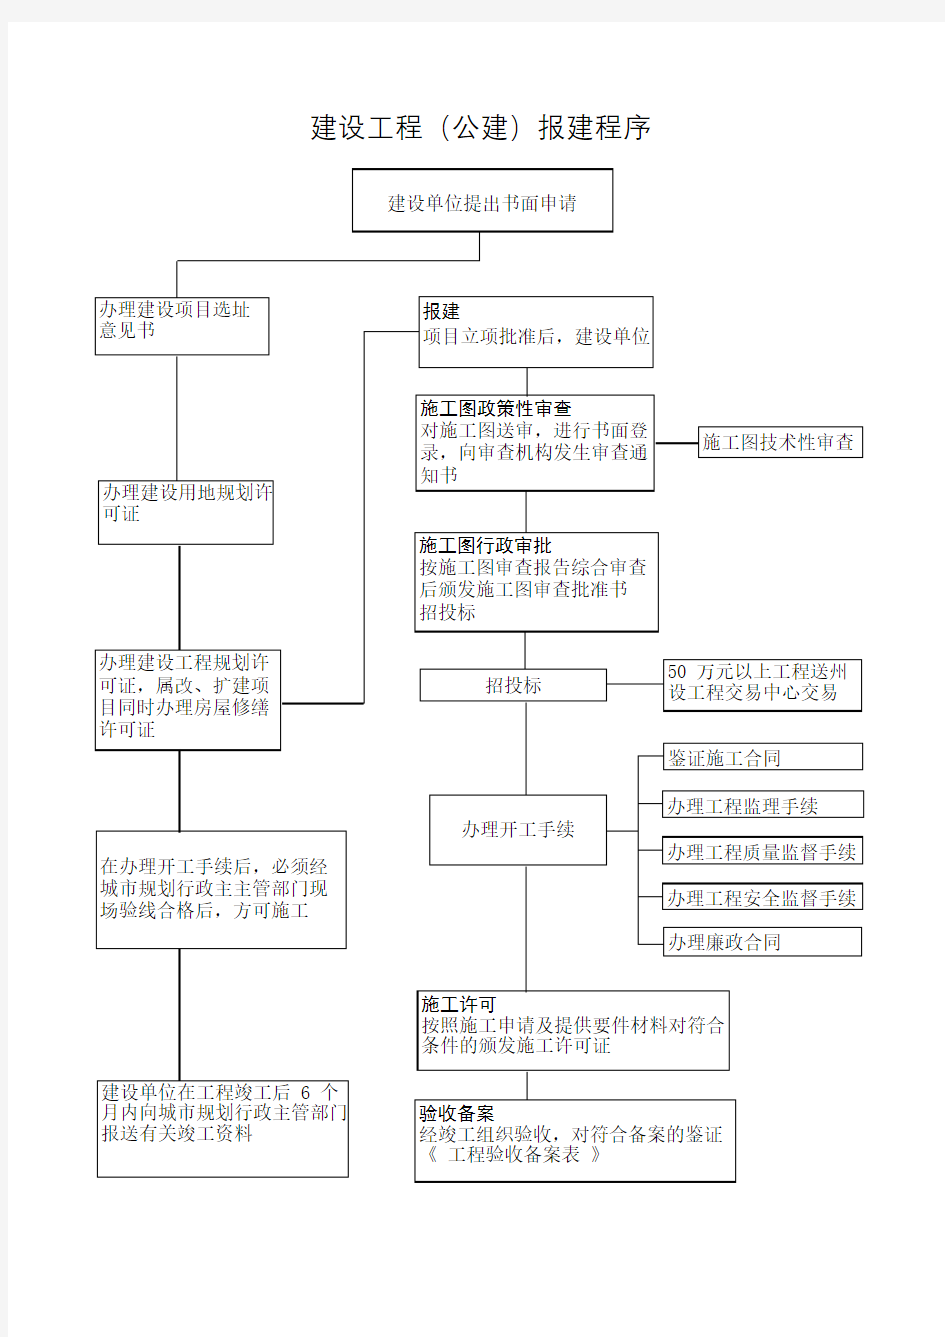 广州市建设工程报建流程图